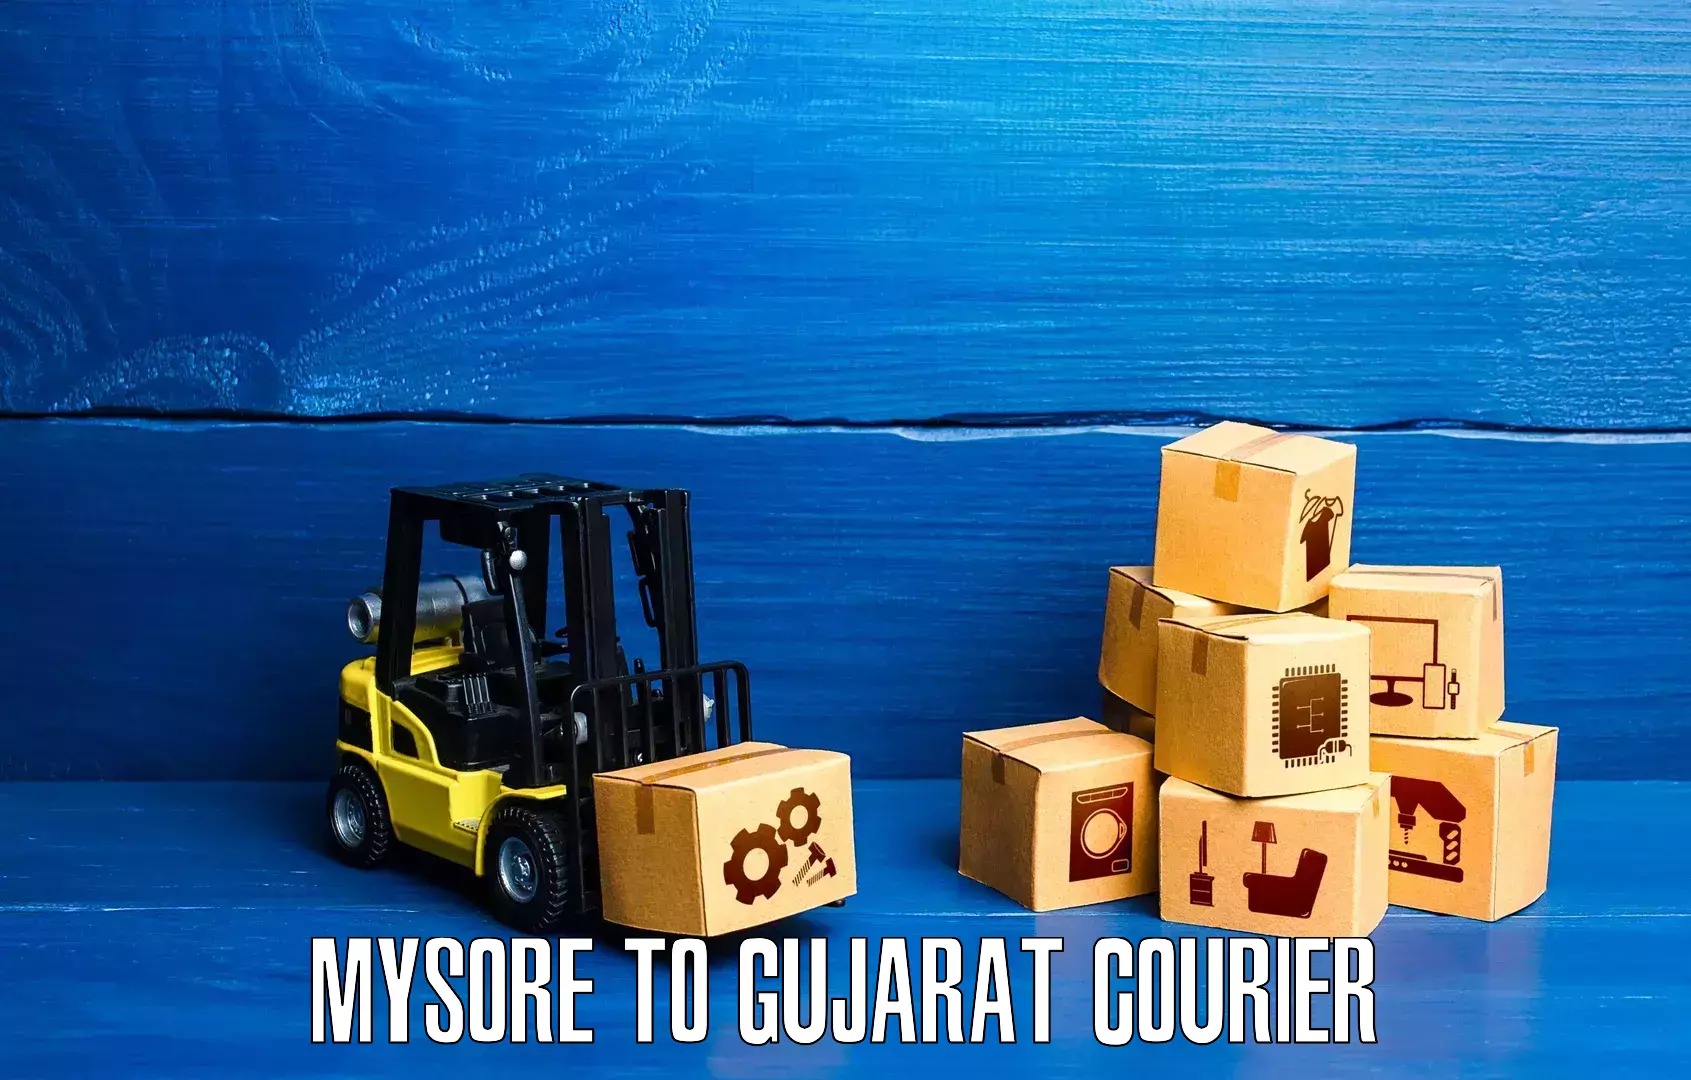 Professional courier handling Mysore to IIIT Surat